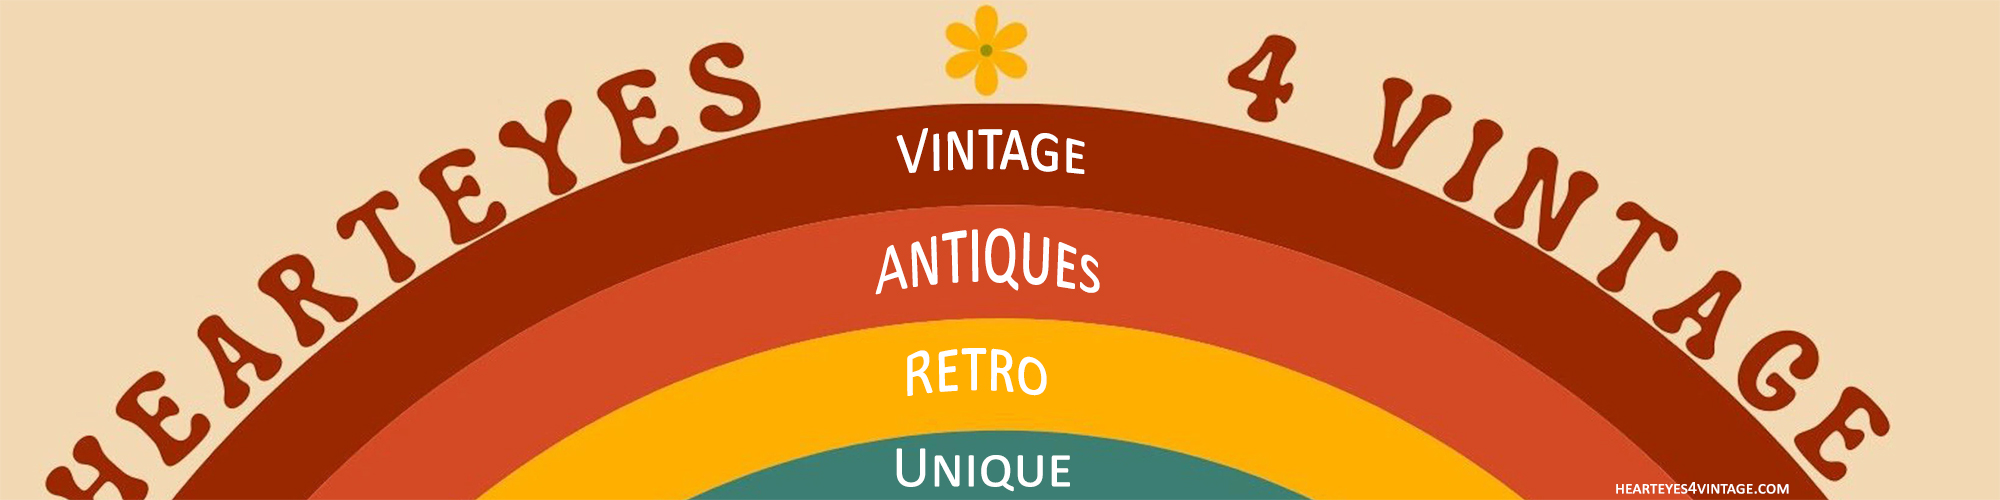 Vintage, Antiques, Retro, Unique Treasures for Sale